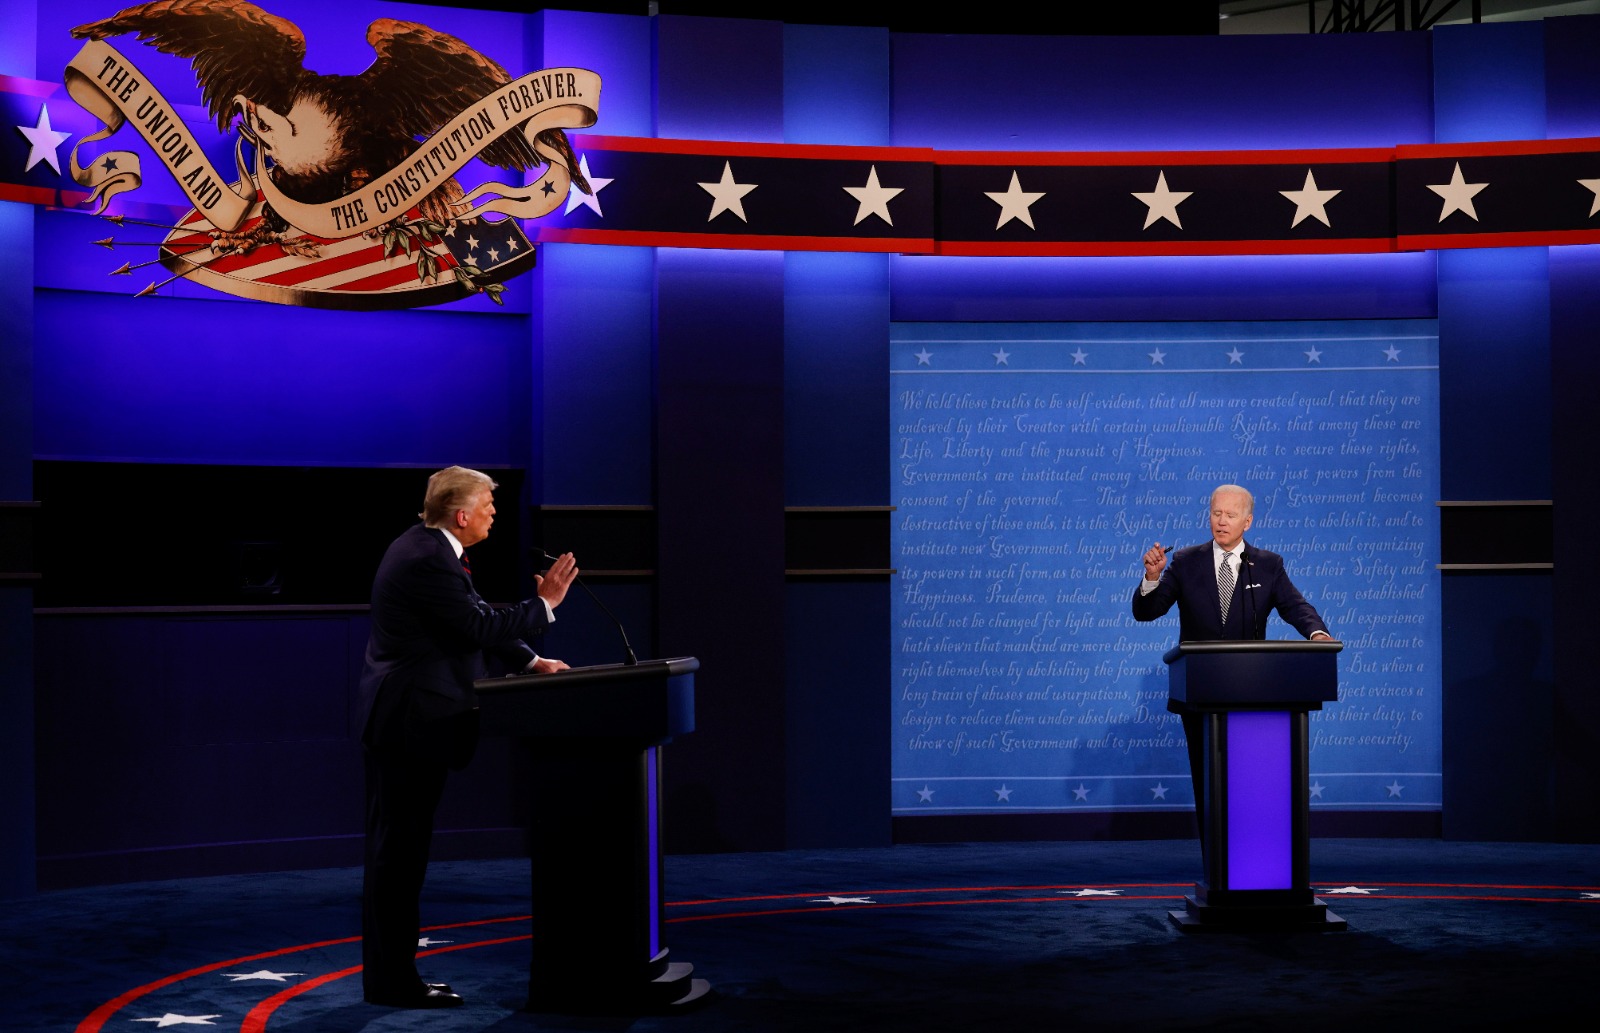 مناظرة بين دونالد ترمب وجو بايدن خلال حملة الانتخابات الرئاسية لعام 2020 في ولاية أوهايو. 29 سبتمبر 2020 - Reuters